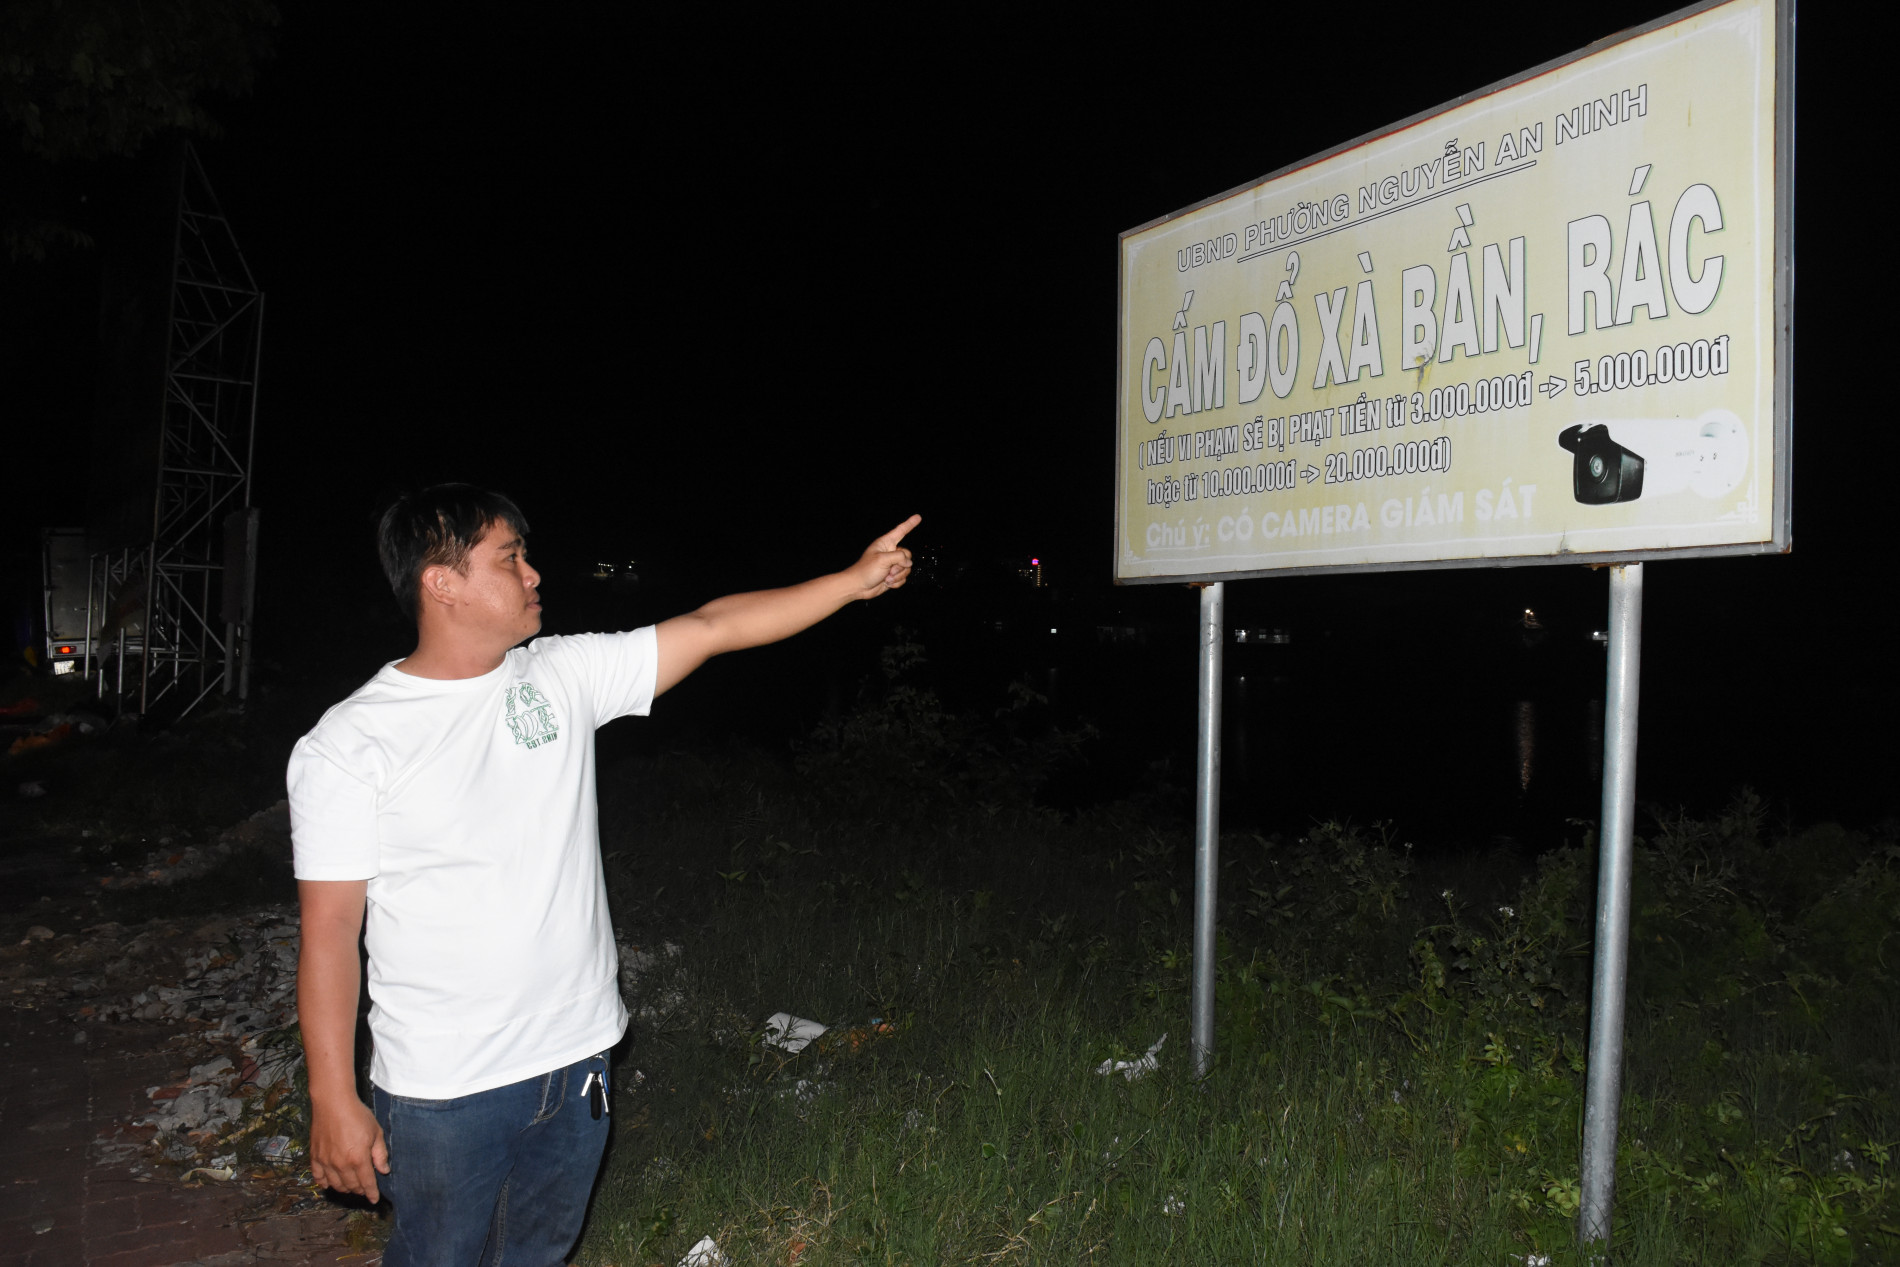 Phường Nguyễn An Ninh đã gắn bảng cấm đổ rác xà bần kèm theo quy định xử phạt tại khu vực gần hẻm 442 Bình Giã nhưng người dân vẫn lén lút bỏ rác tại đây.